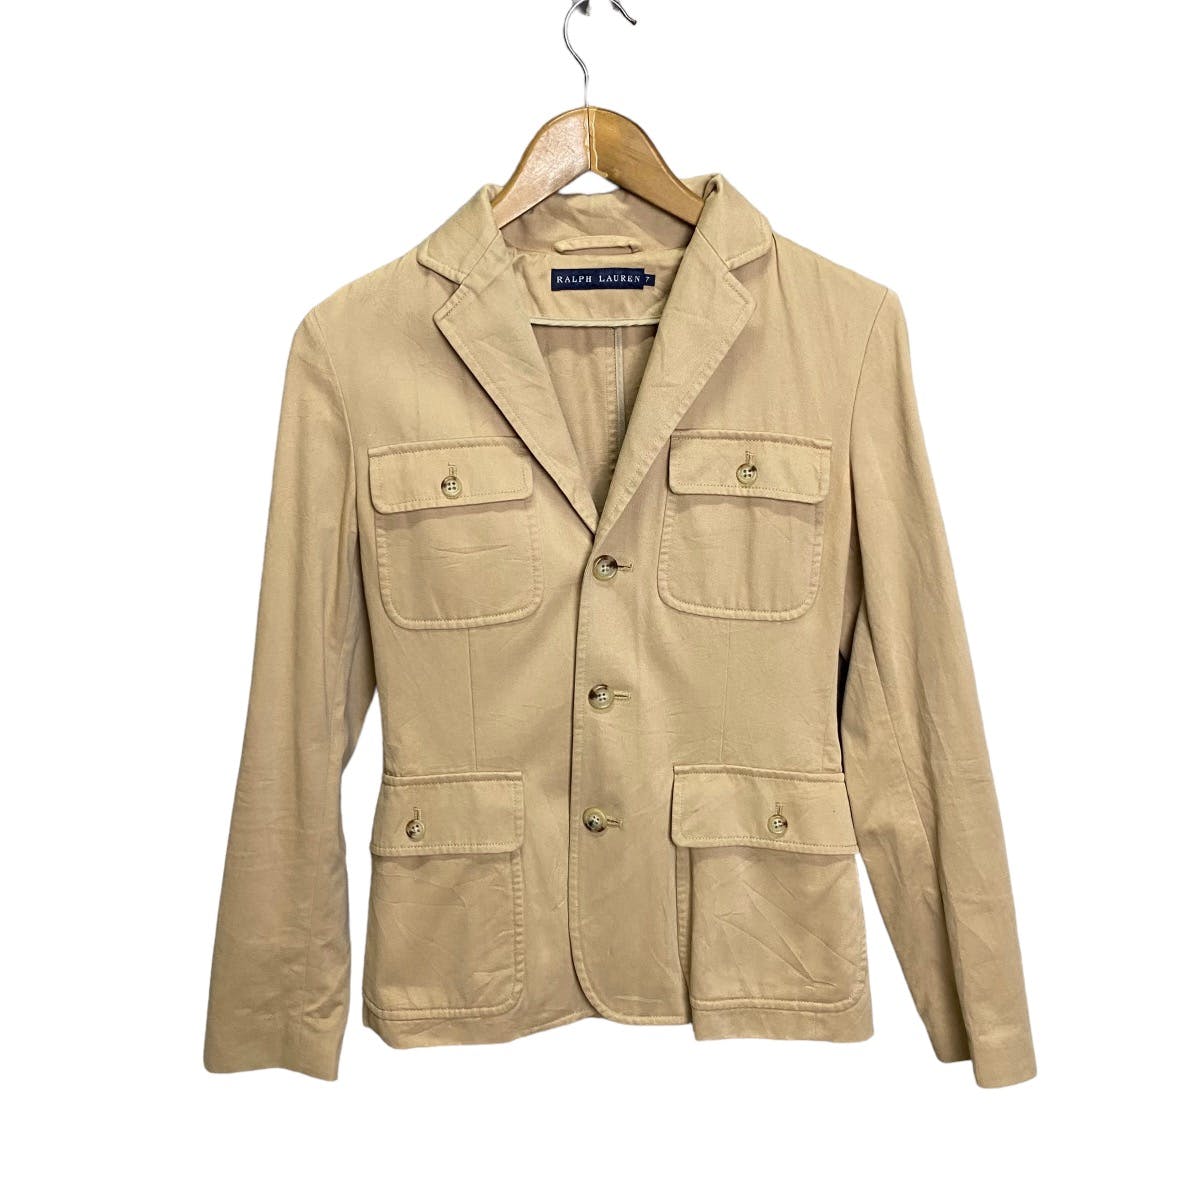 Ralph Lauren 4 pocket jacket - 1